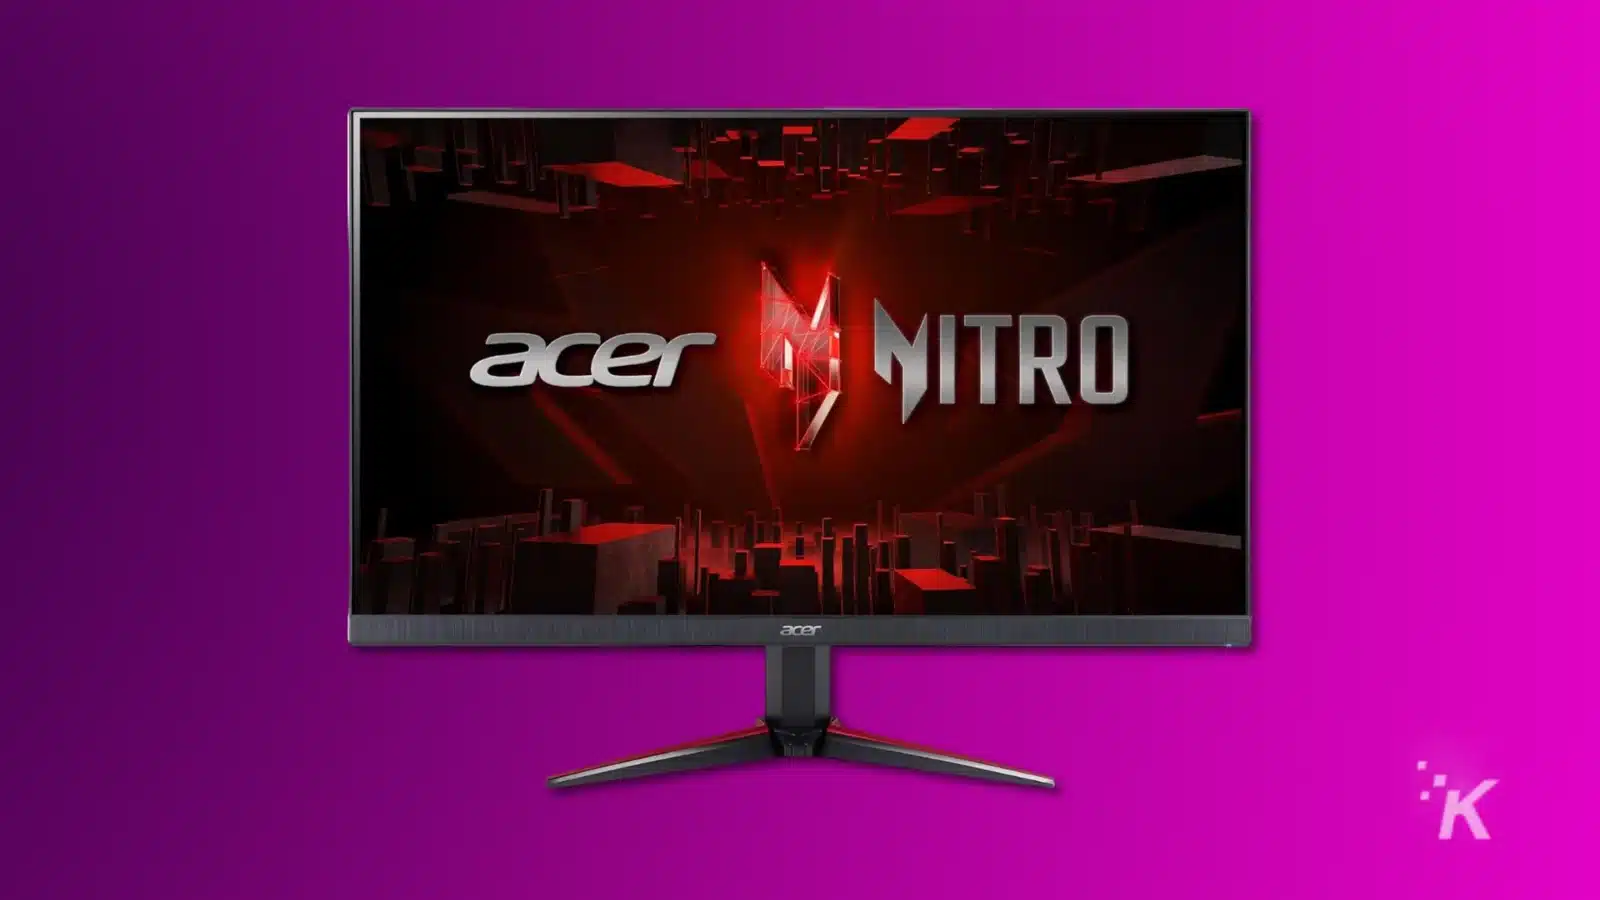 عرض شاشة ألعاب Acer Nitro على خلفية أرجوانية.